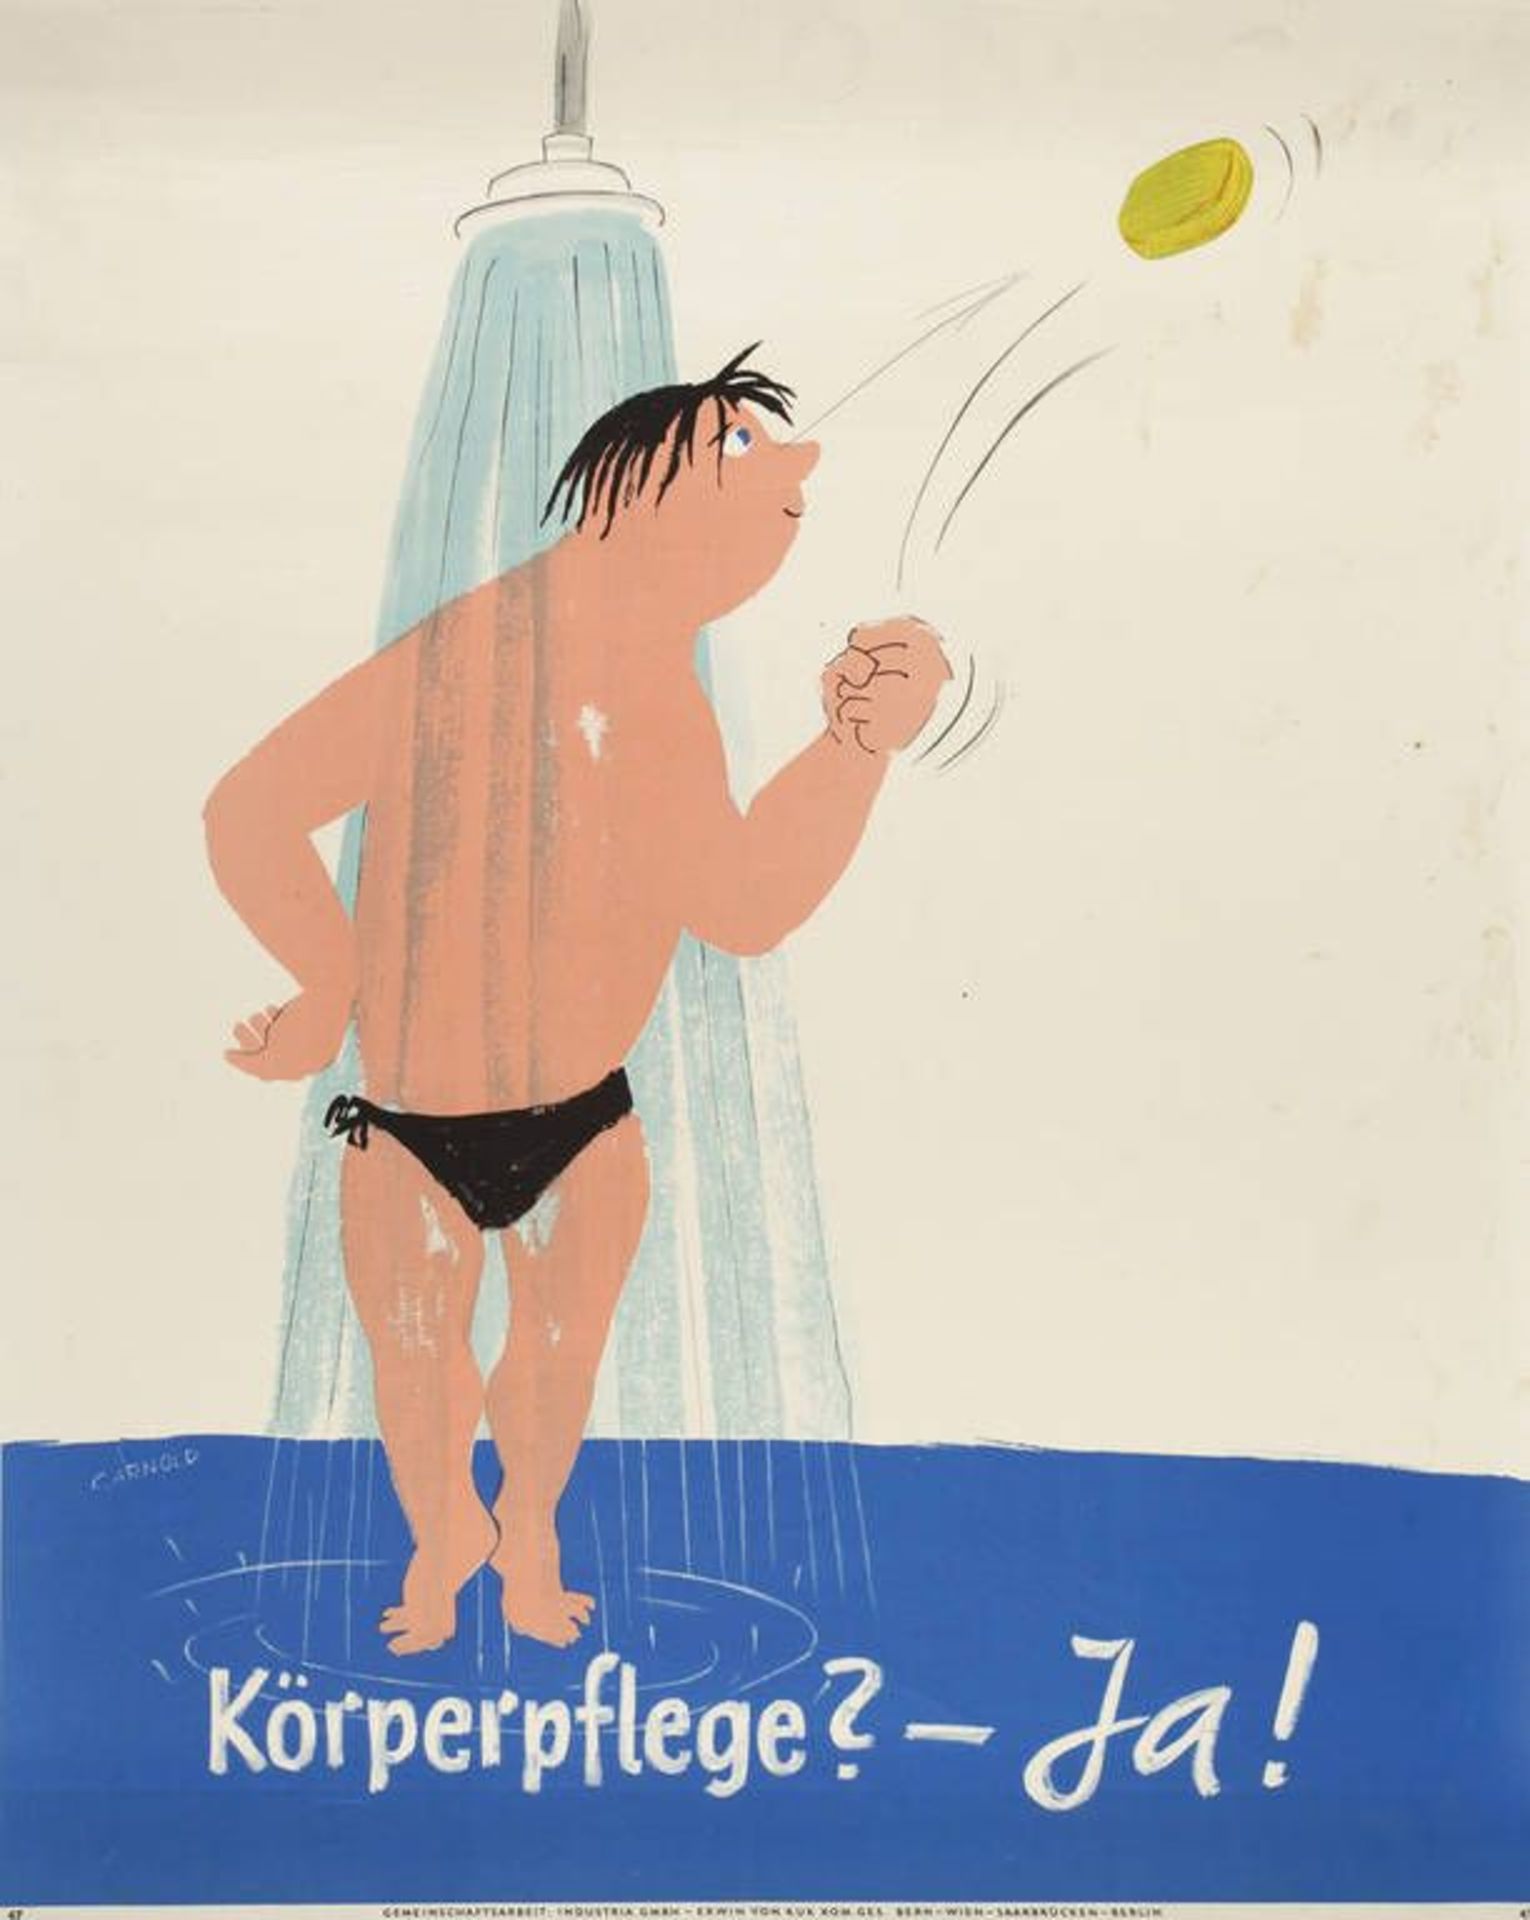 Plakat Körperpflege  1960er Jahre, sign. C. Arnold, Farboffsetdruck auf Papier, Hrsg.